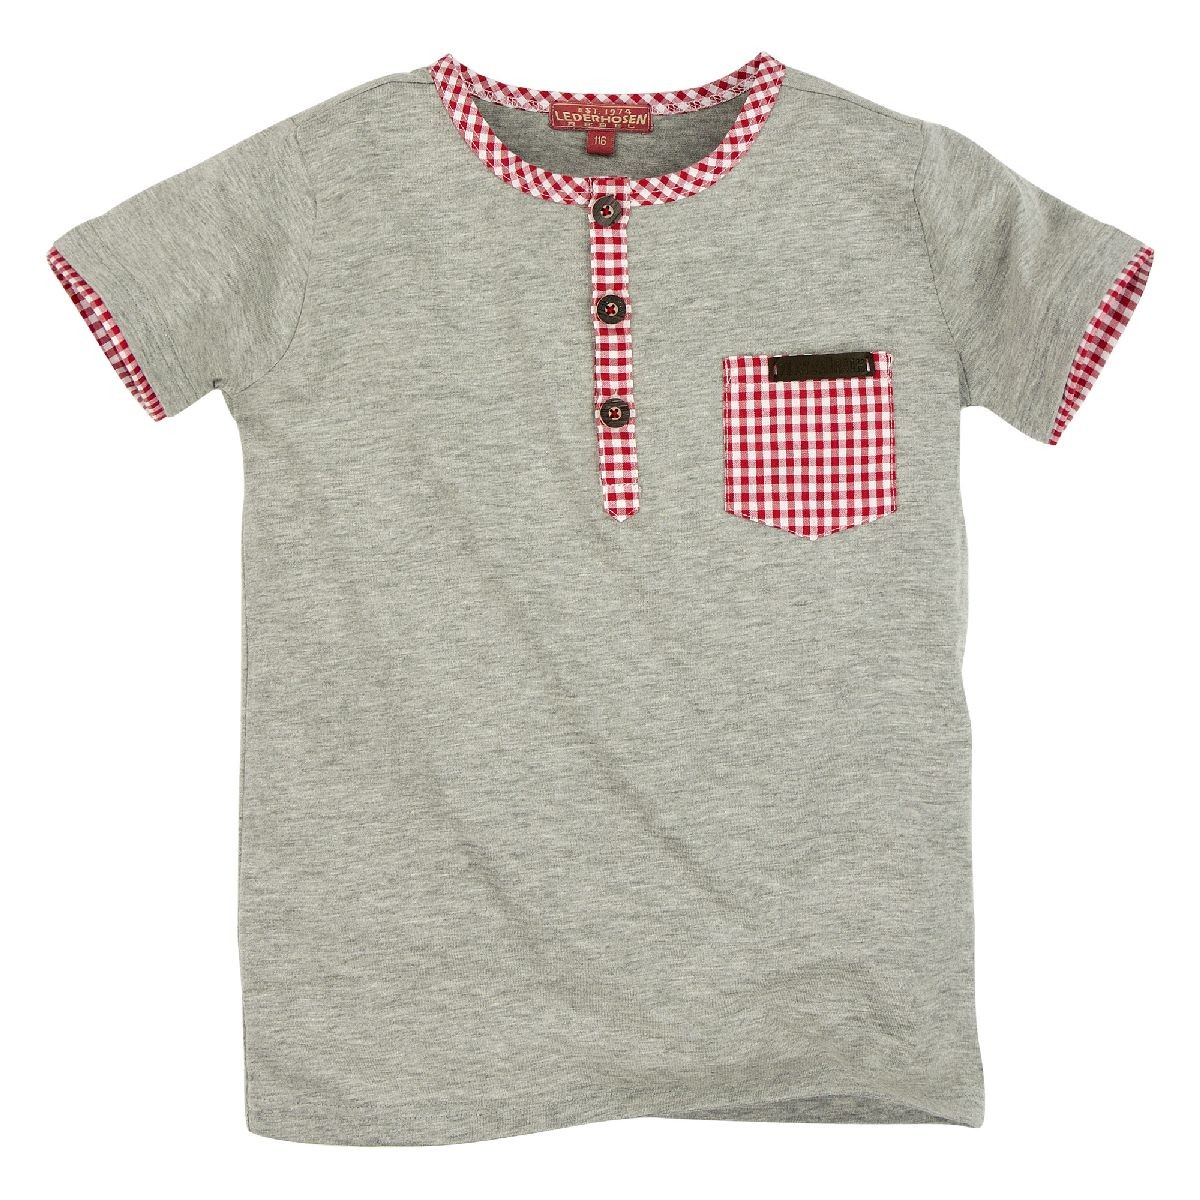 Koszulka z zapięciem na guziki (dziecięca koszulka 1/2 ramienia)